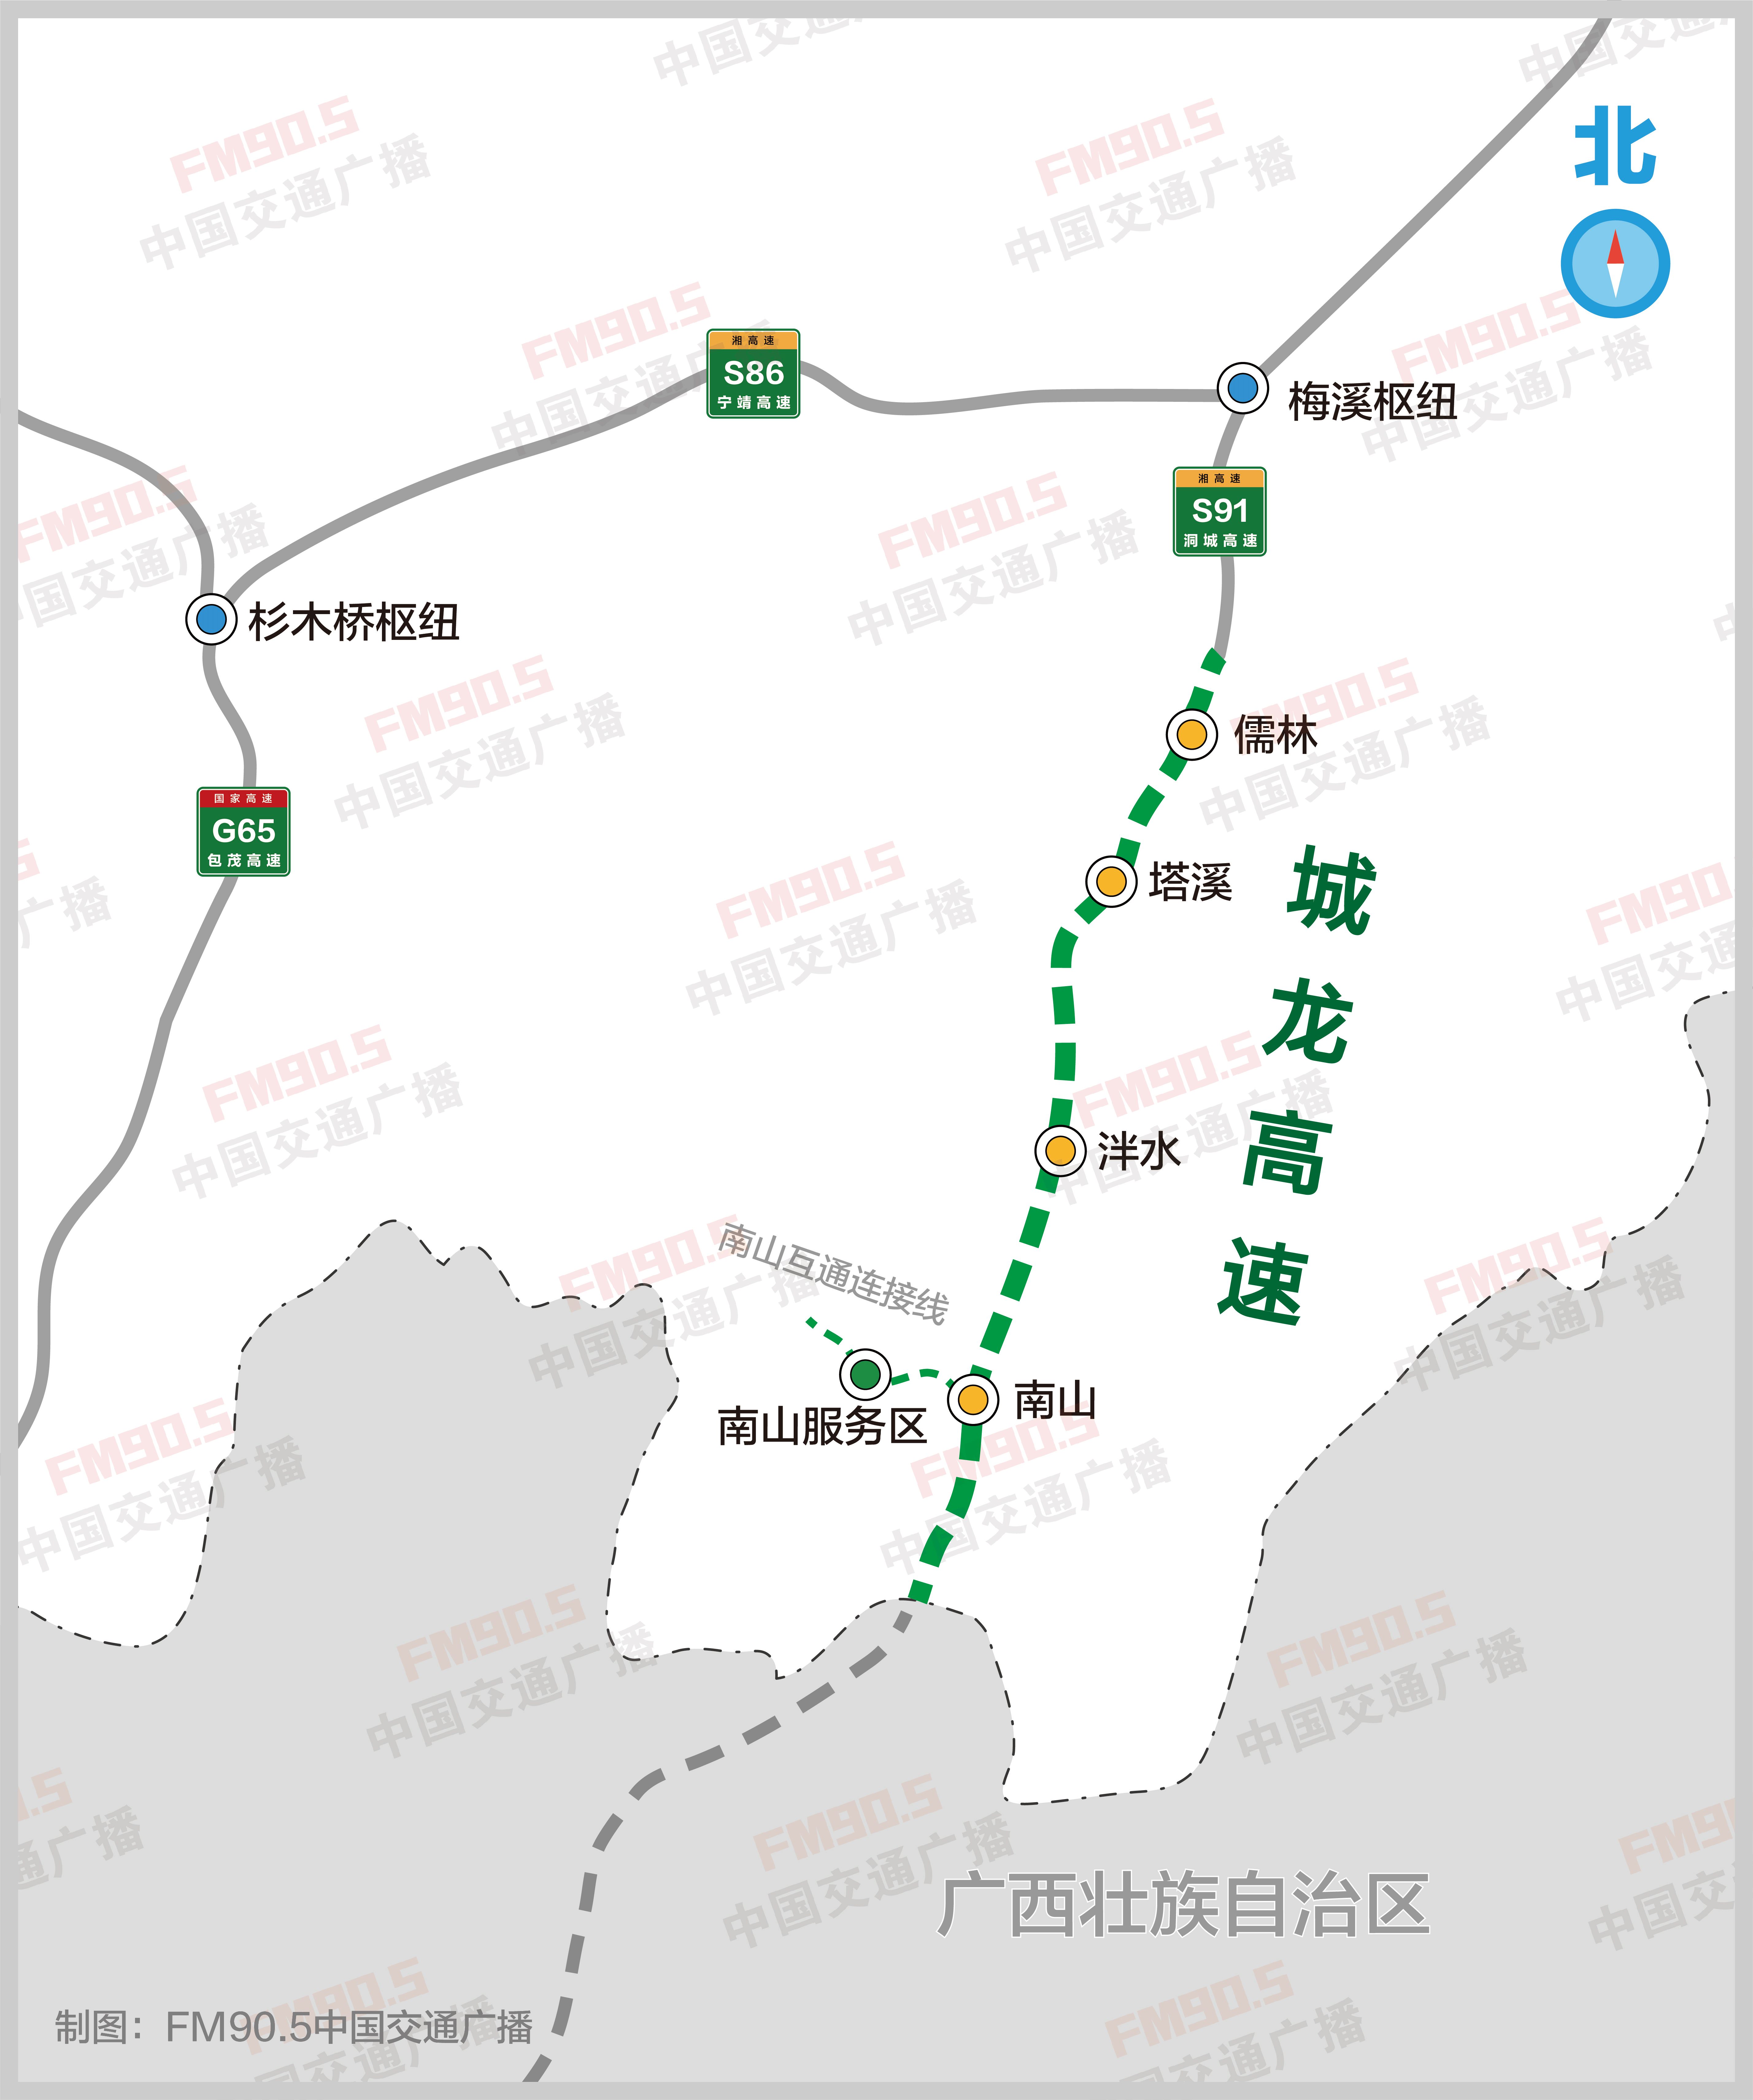 江西省高快速铁路线网图_全线